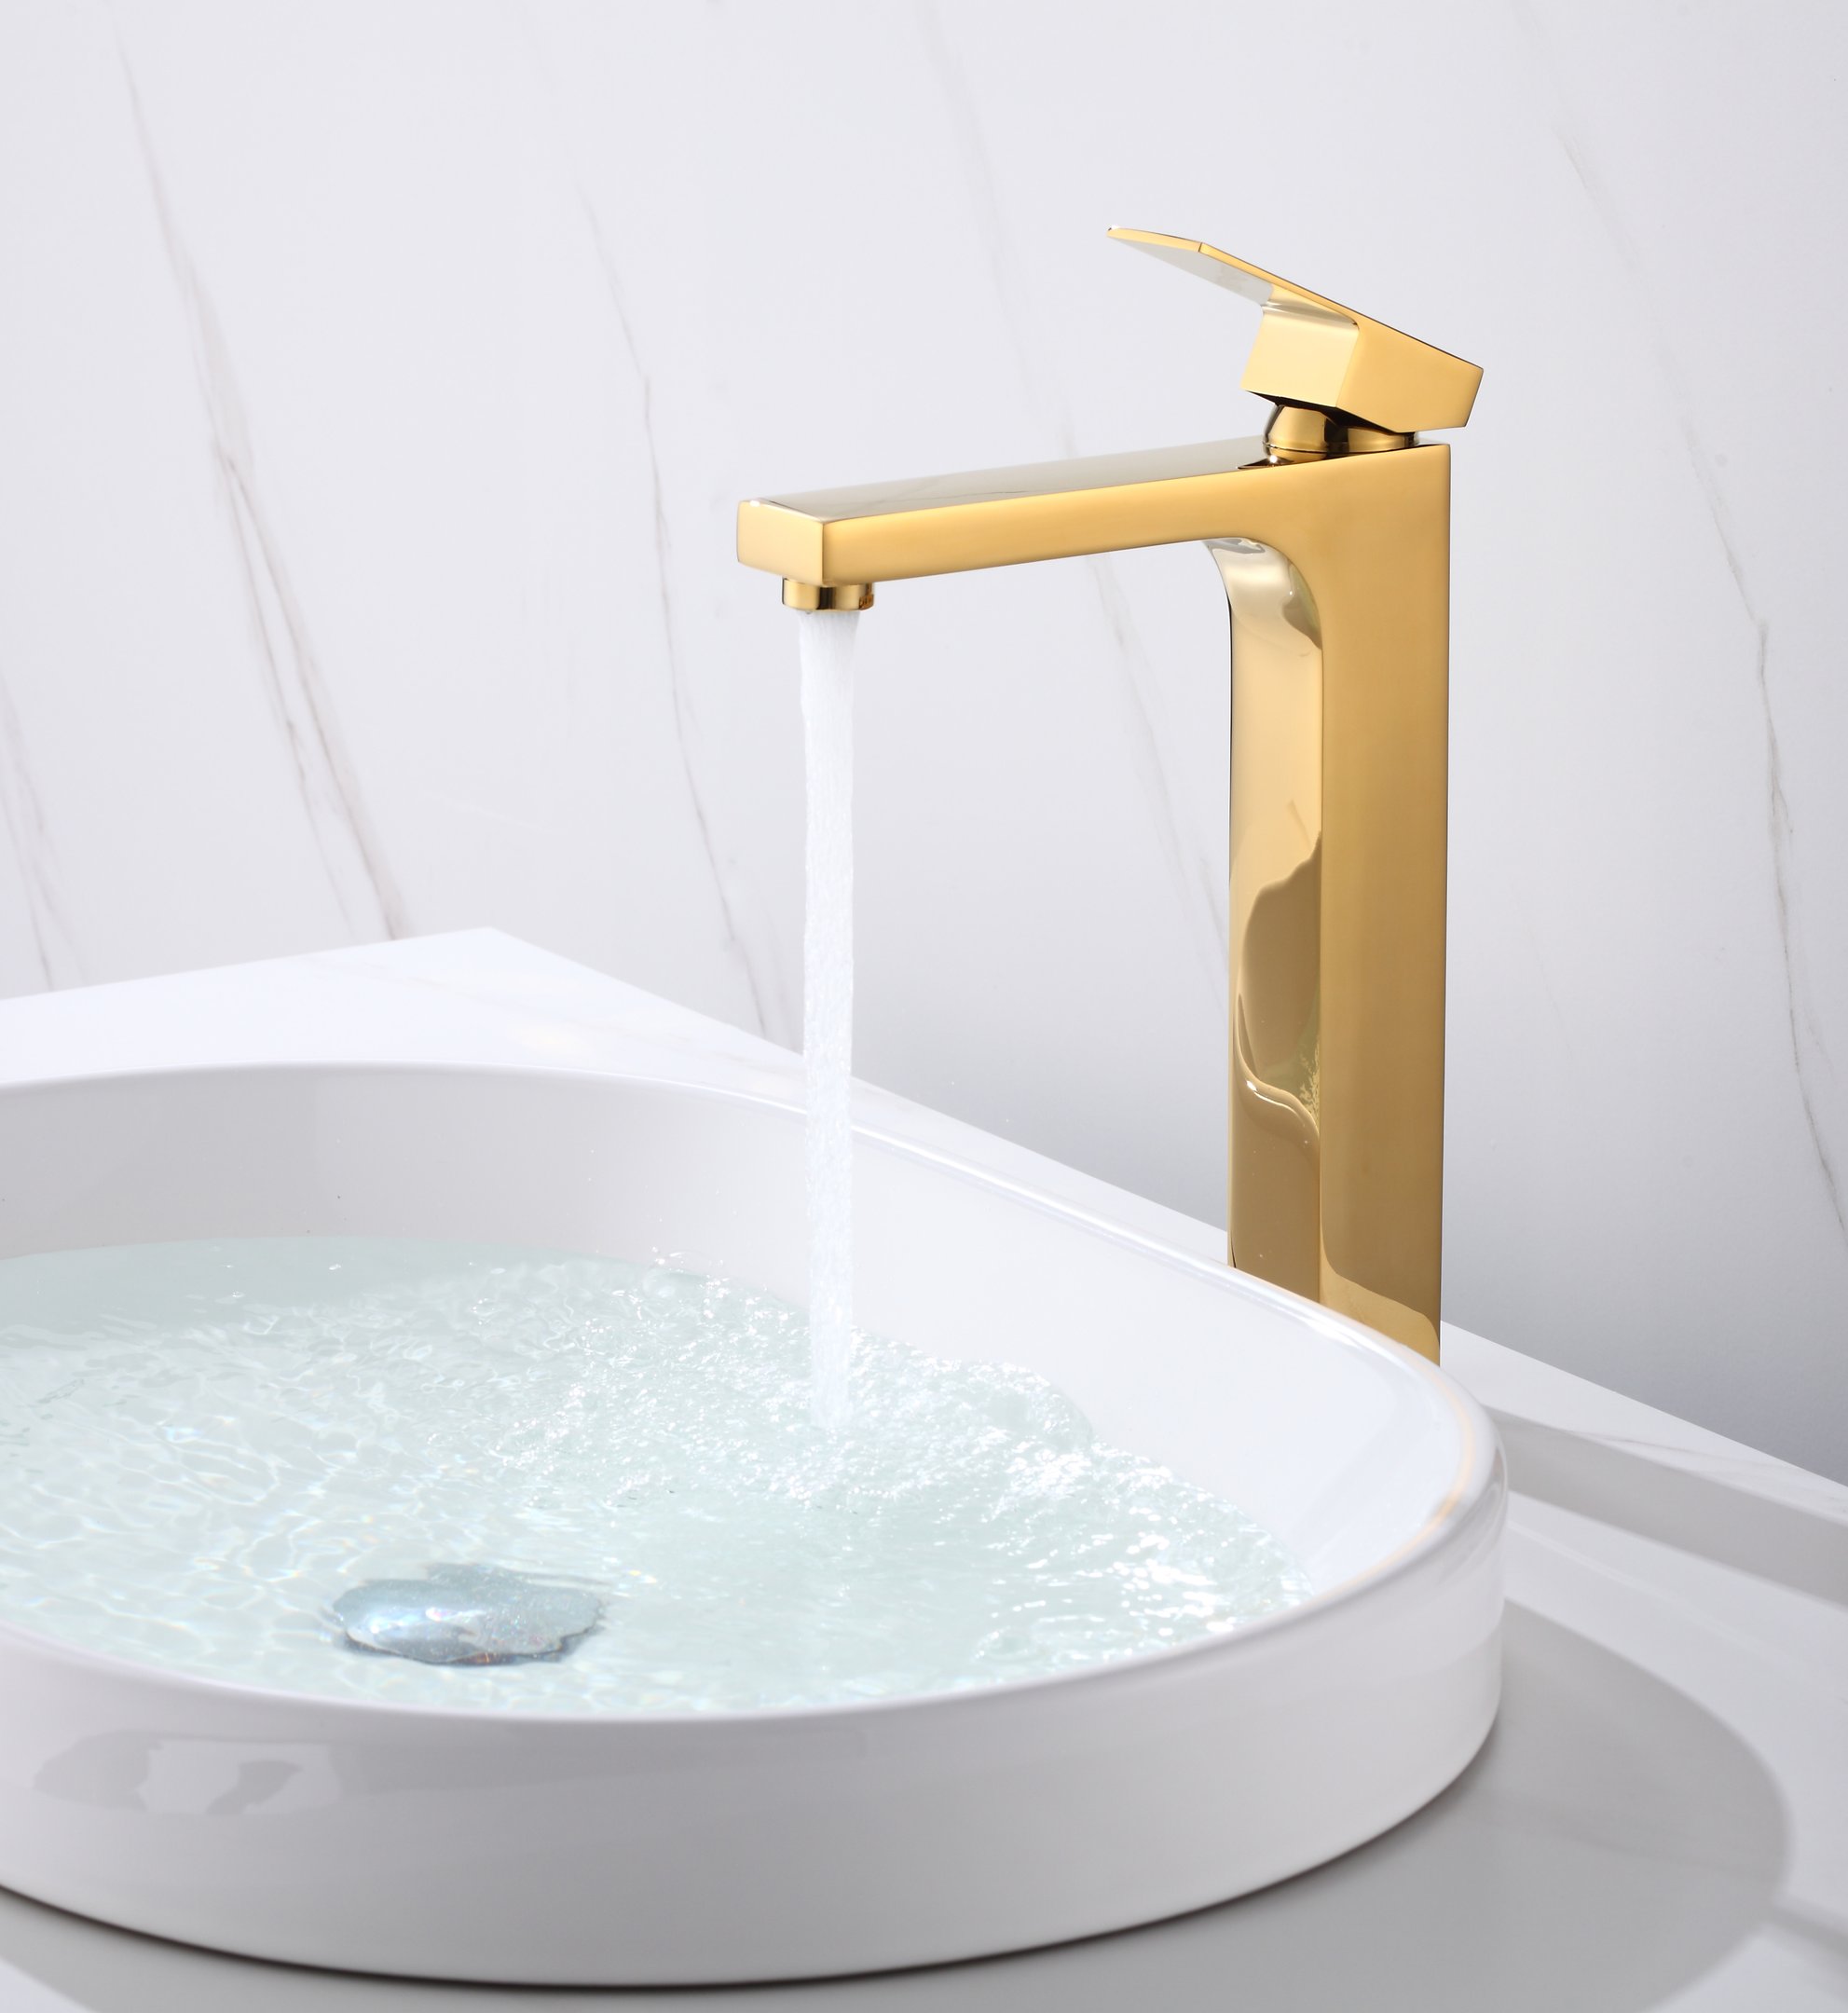 Torneira Monocomando Dourado Gold Quadrada Banheiro Lavabo Bica Alta Luxo Inovartte In